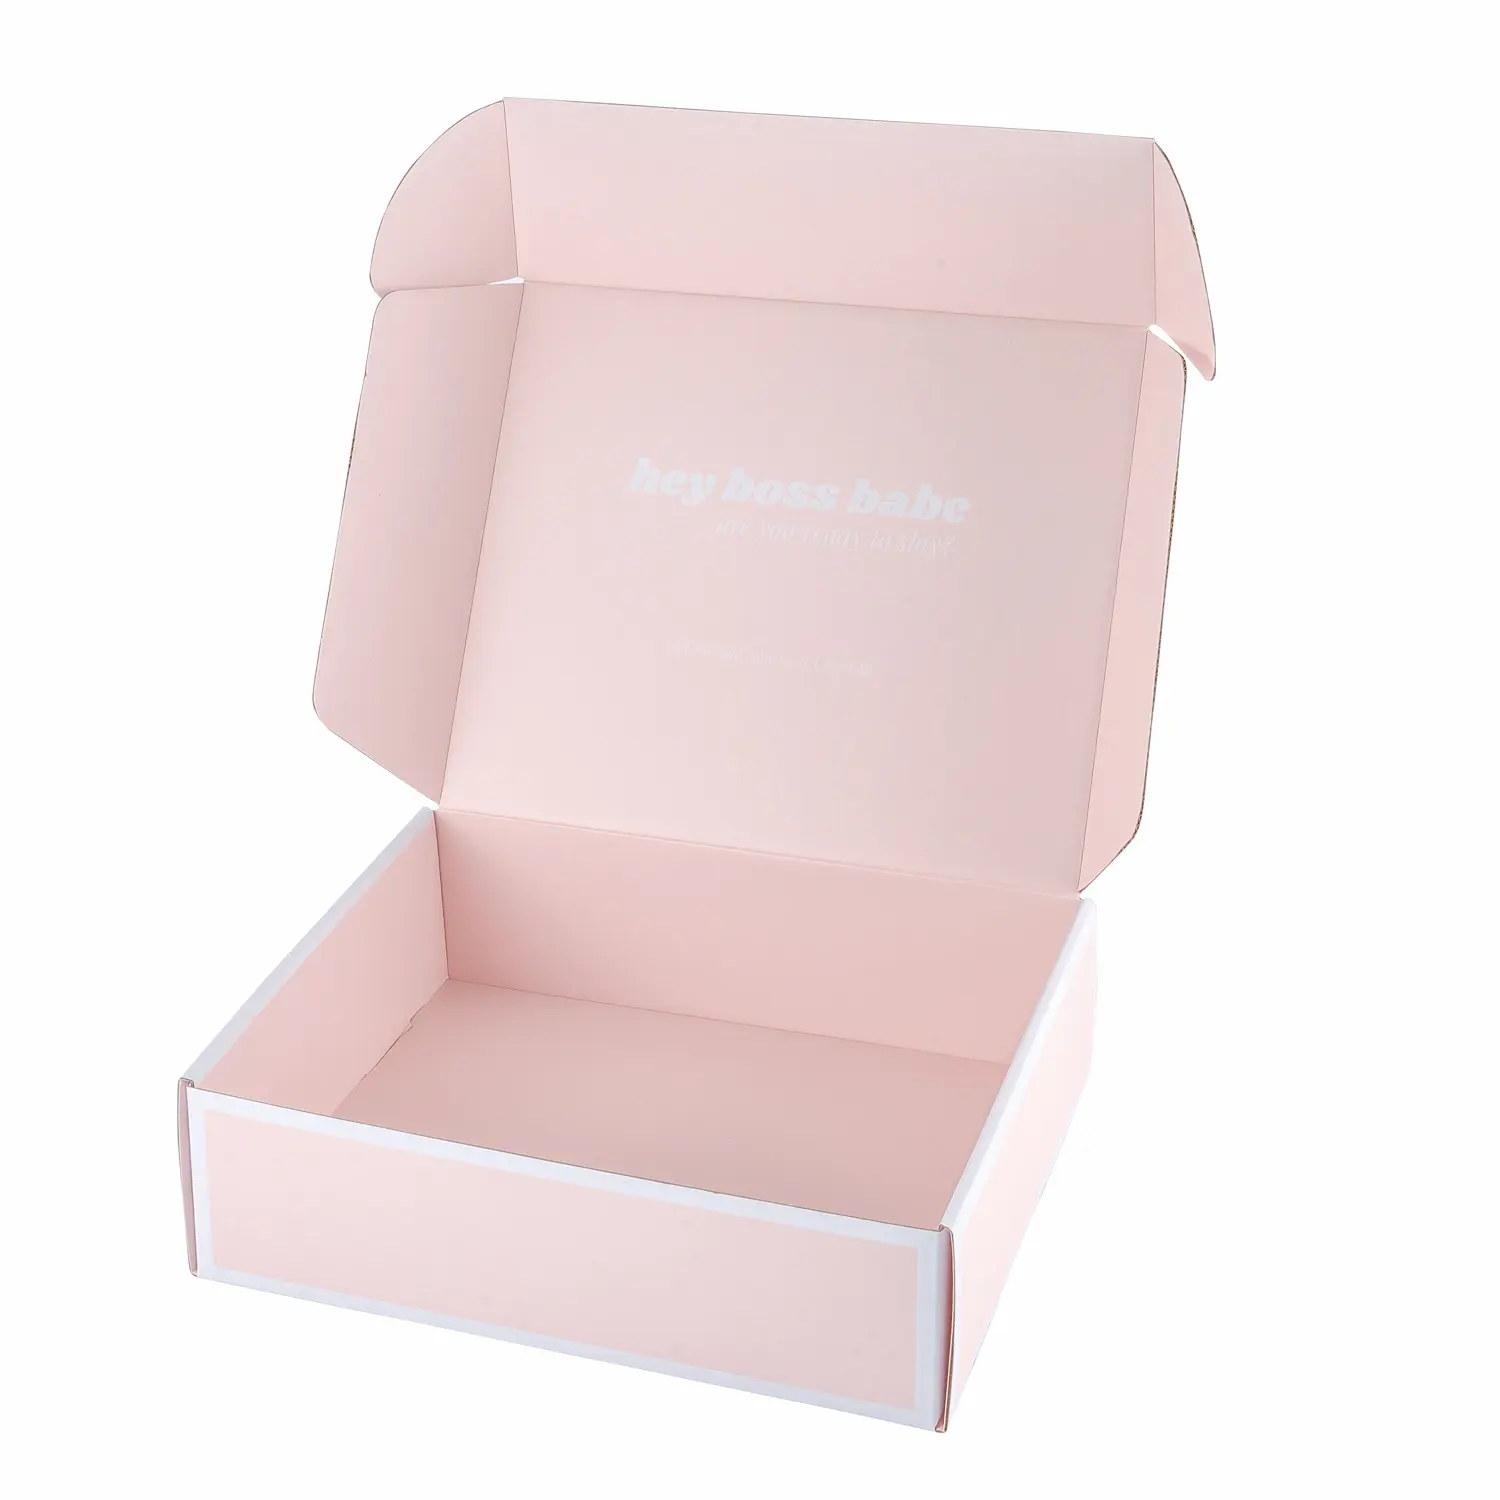 शीर्ष बिक्री गर्म गुलाबी कपड़े उपहार बॉक्स सौंदर्य प्रसाधन मेलर बक्से पैकेजिंग सौंदर्य उत्पादों की पैकेजिंग विग मेलर शिपिंग बॉक्स